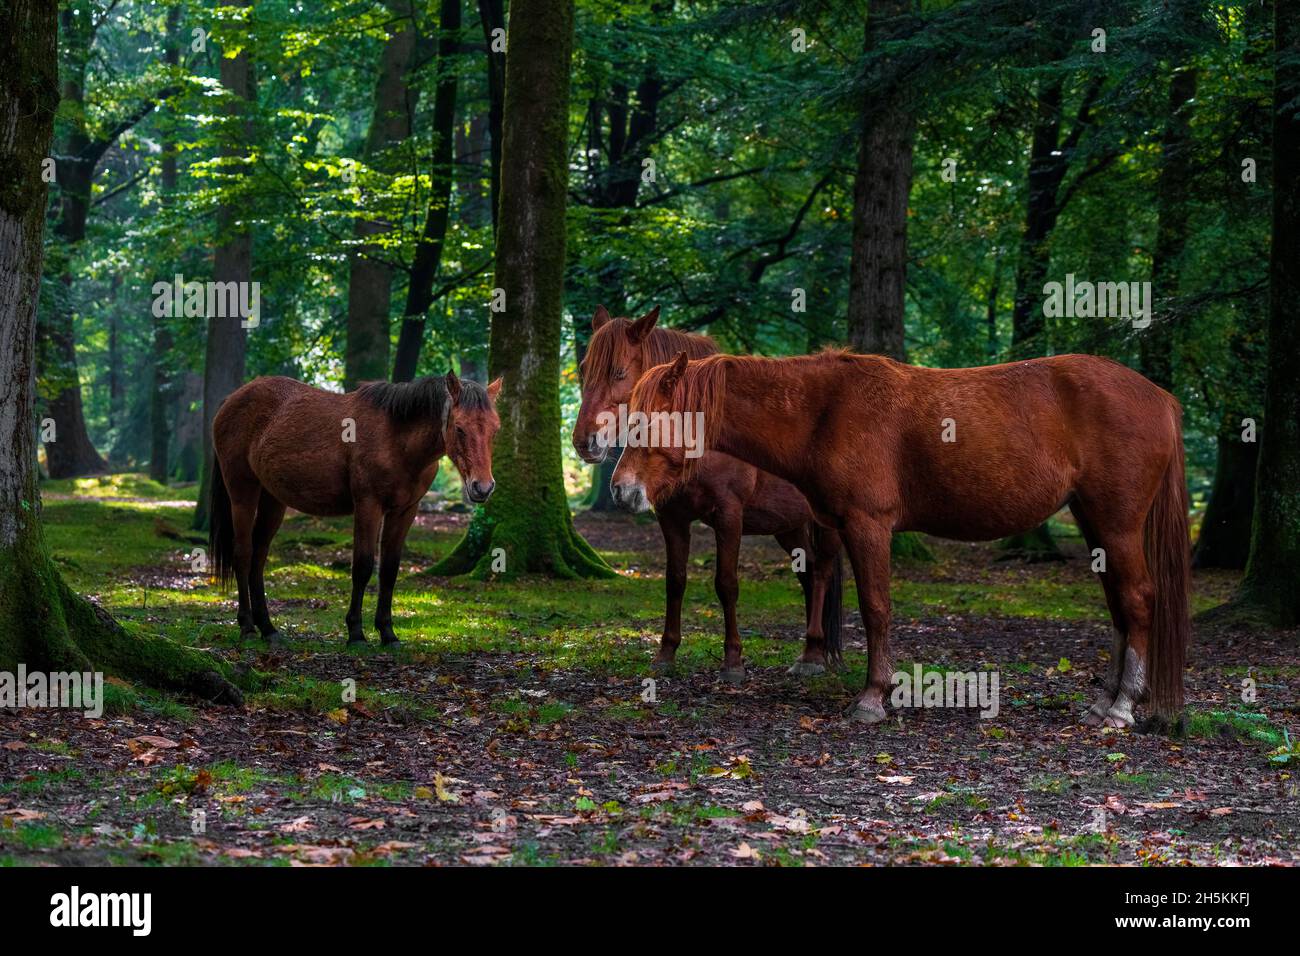 Ponies-Equus ferus caballus dans le parc national de New Forest, Hampshire, Angleterre, Royaume-Uni Banque D'Images